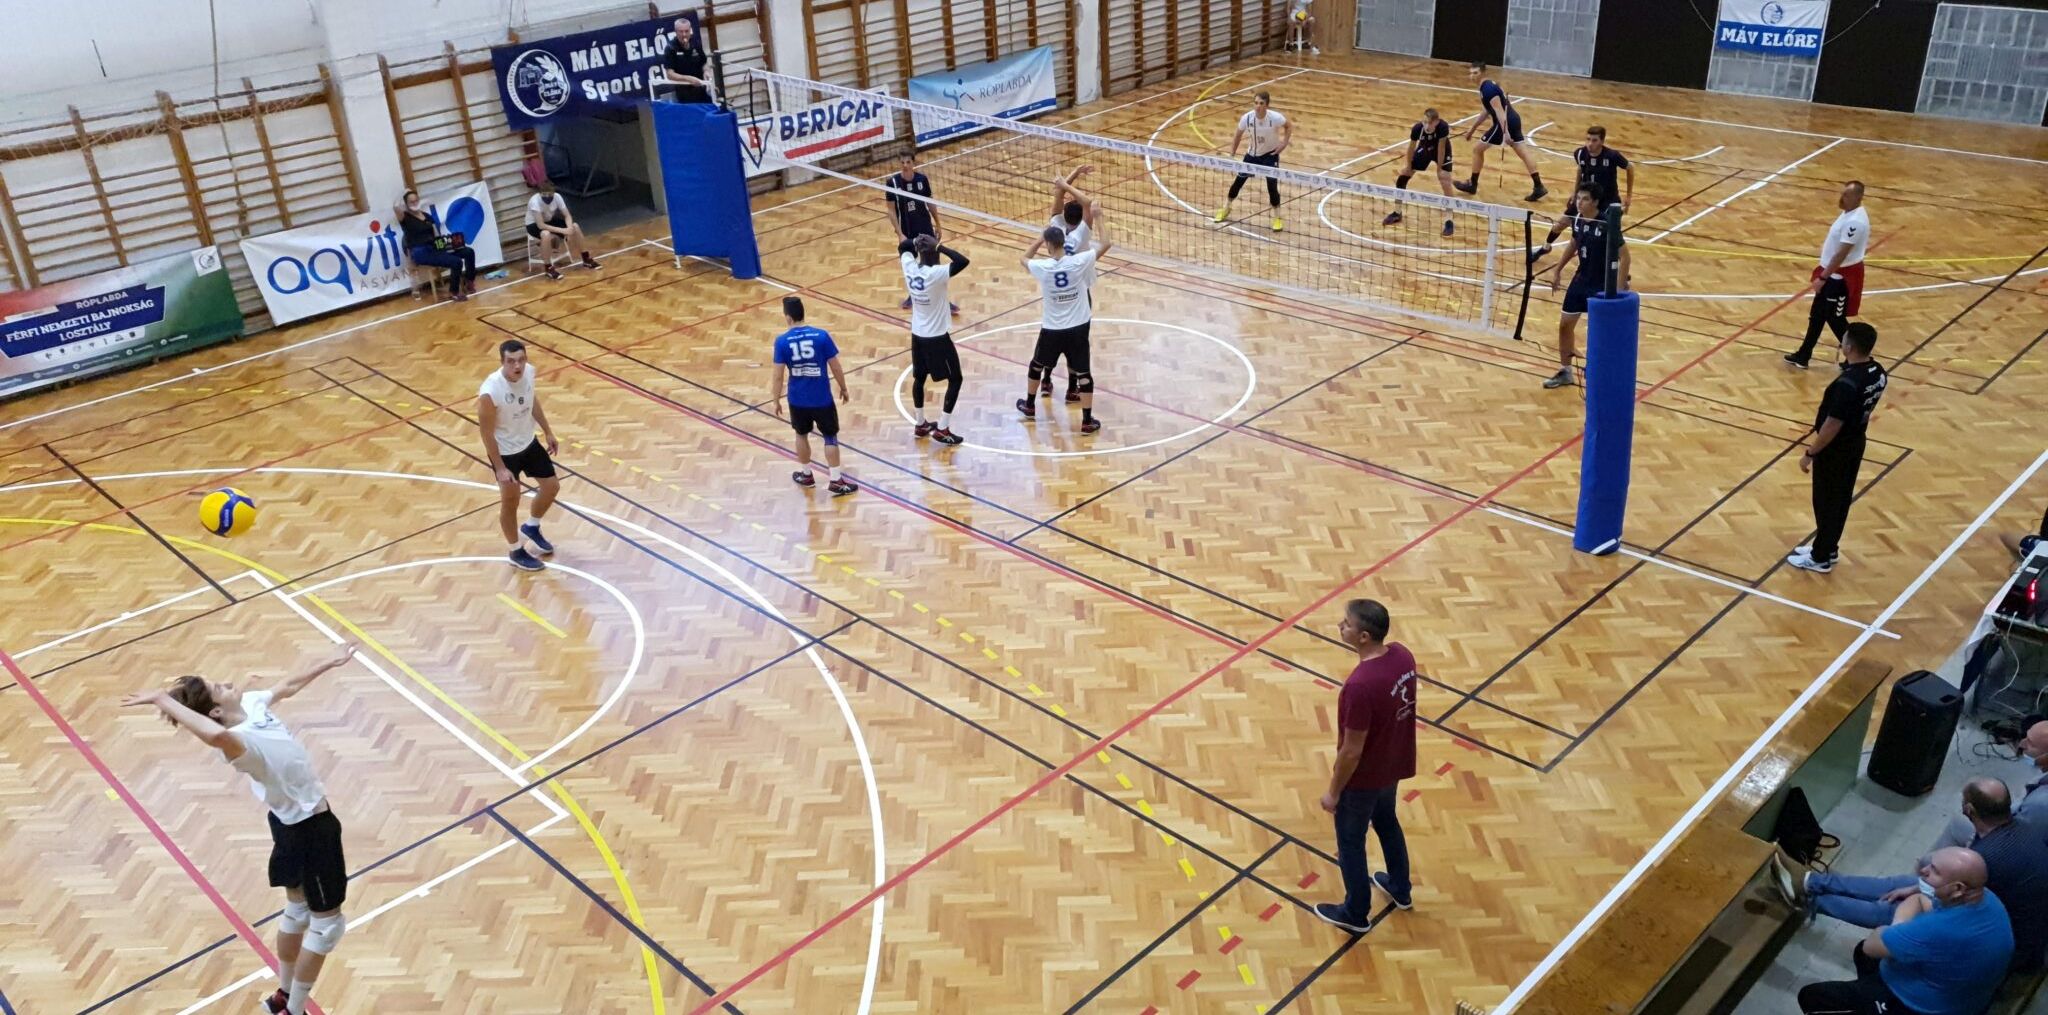 Negyeddöntőig jutott a MÁV Előre a röplaba Magyar Kupában